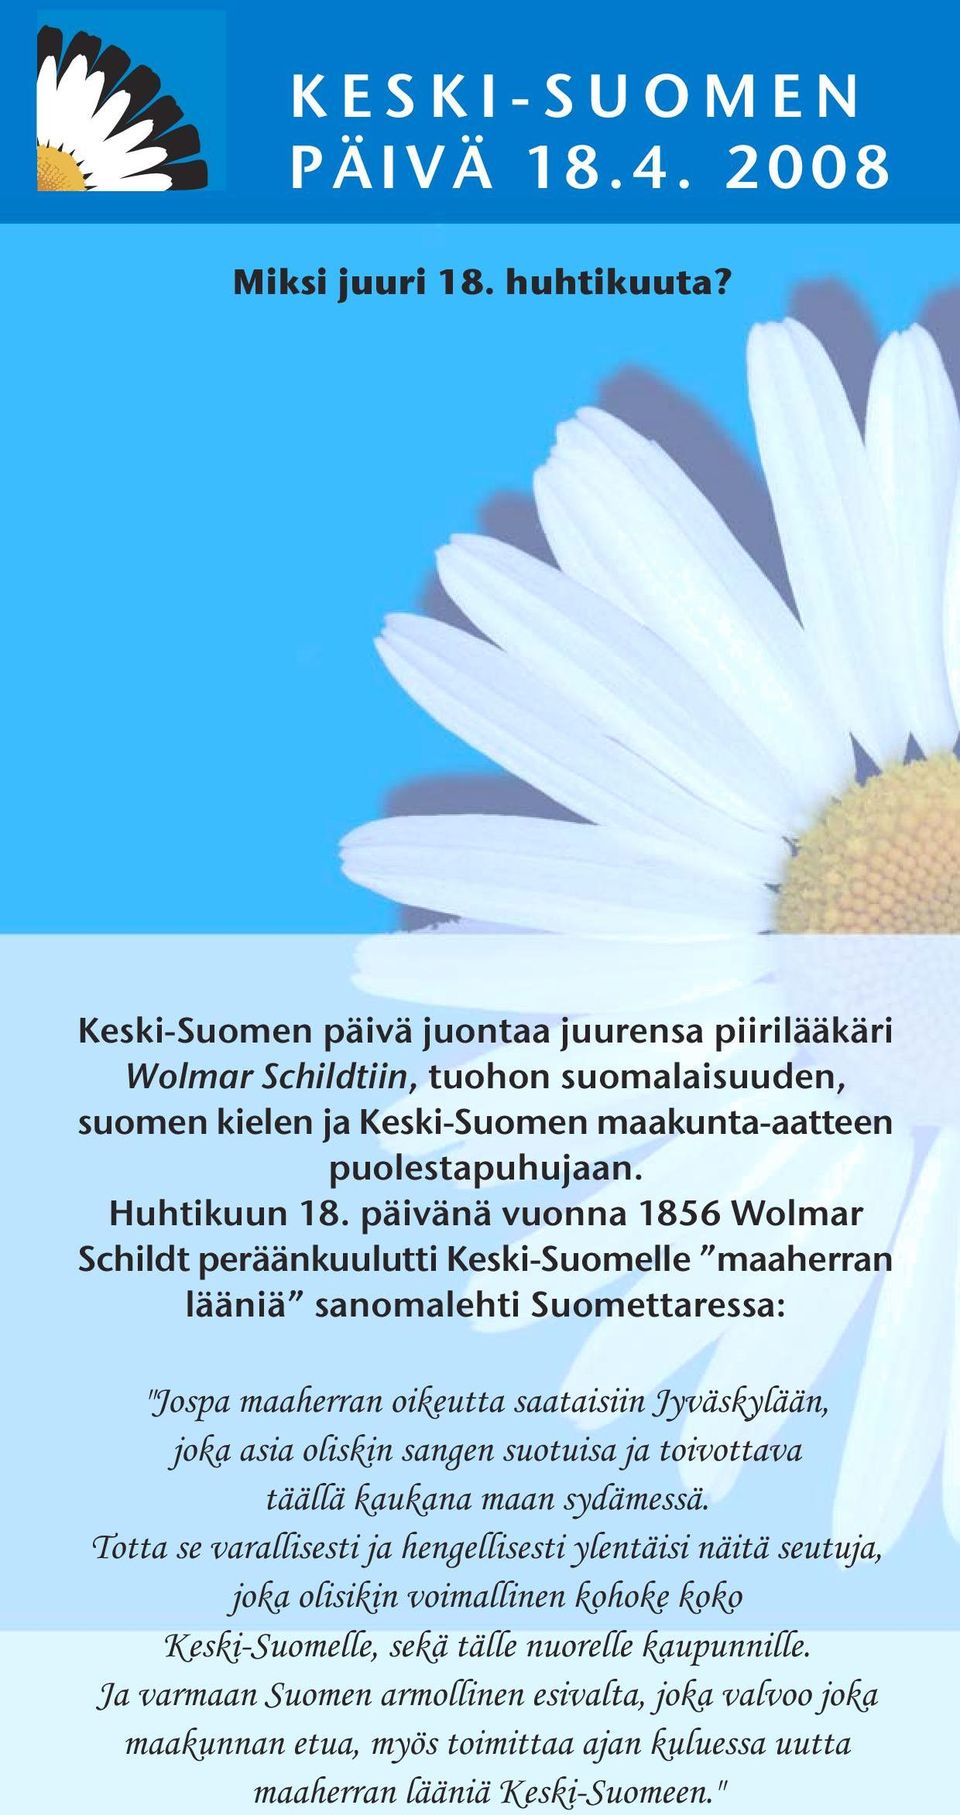 päivänä vuonna 1856 Wolmar Schildt peräänkuulutti Keski-Suomelle maaherran lääniä sanomalehti Suomettaressa: "Jospa maaherran oikeutta saataisiin Jyväskylään, joka asia oliskin sangen